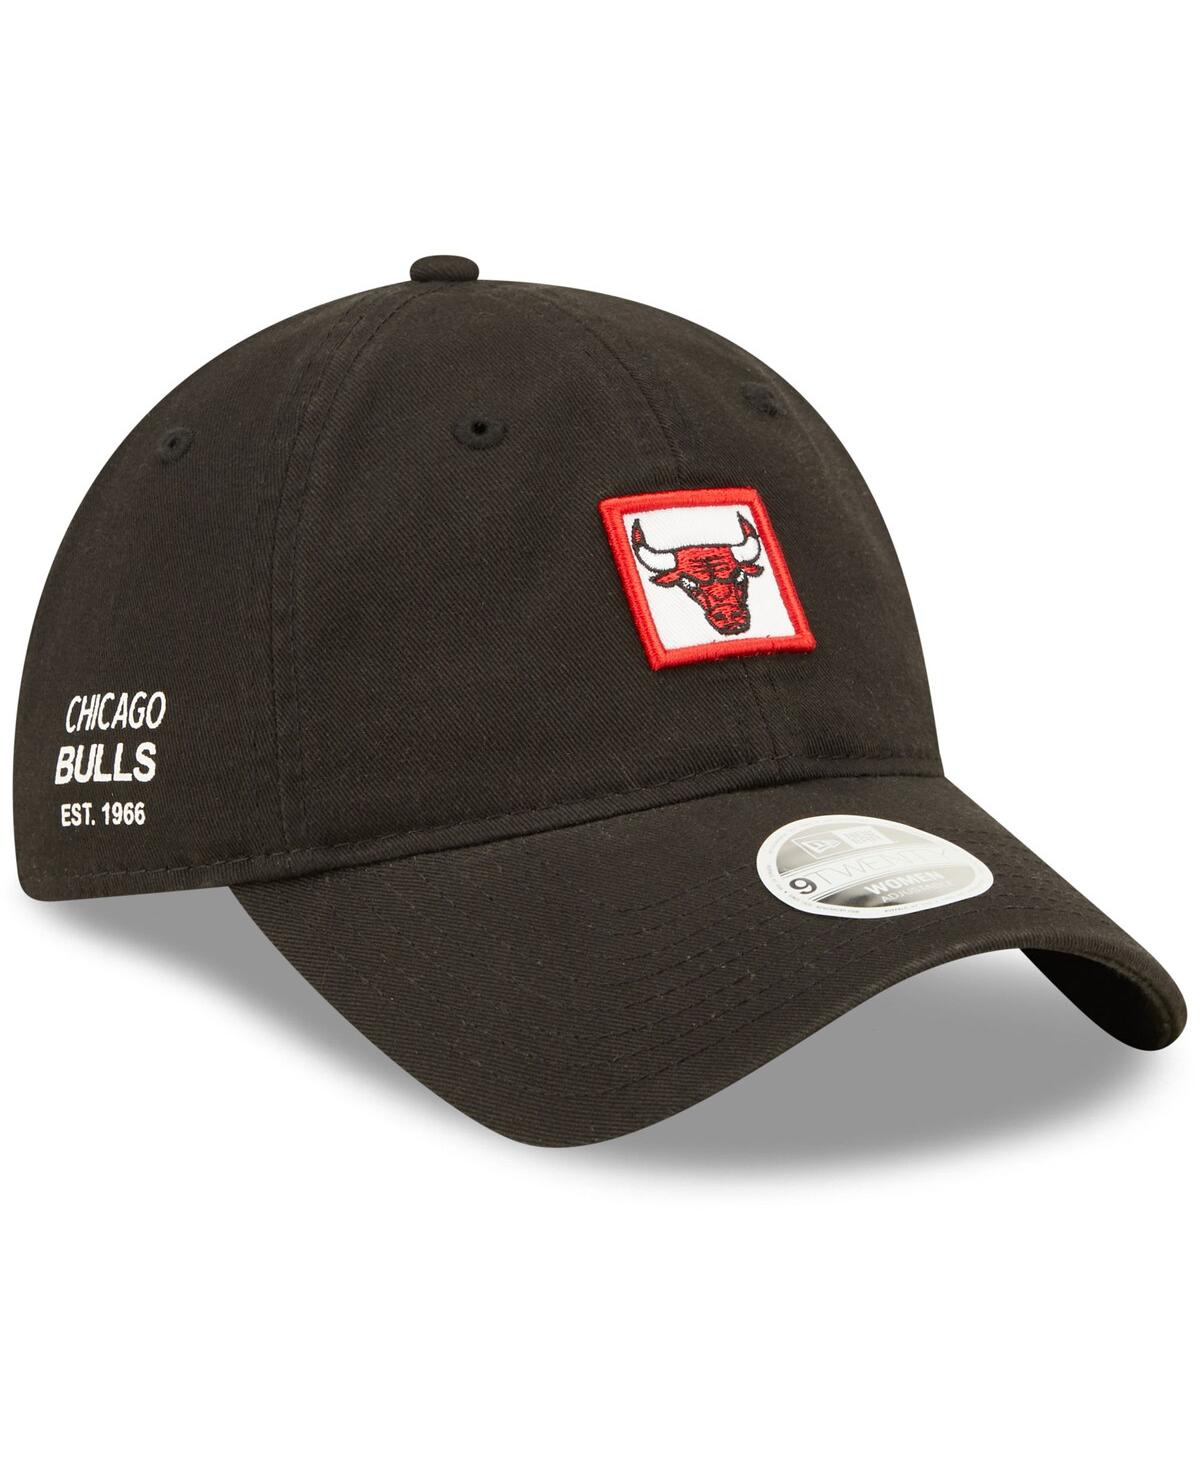 New Era Atlanta Braves Women's Navy Logo Blossom Spring Training 9TWENTY  Adjustable Hat